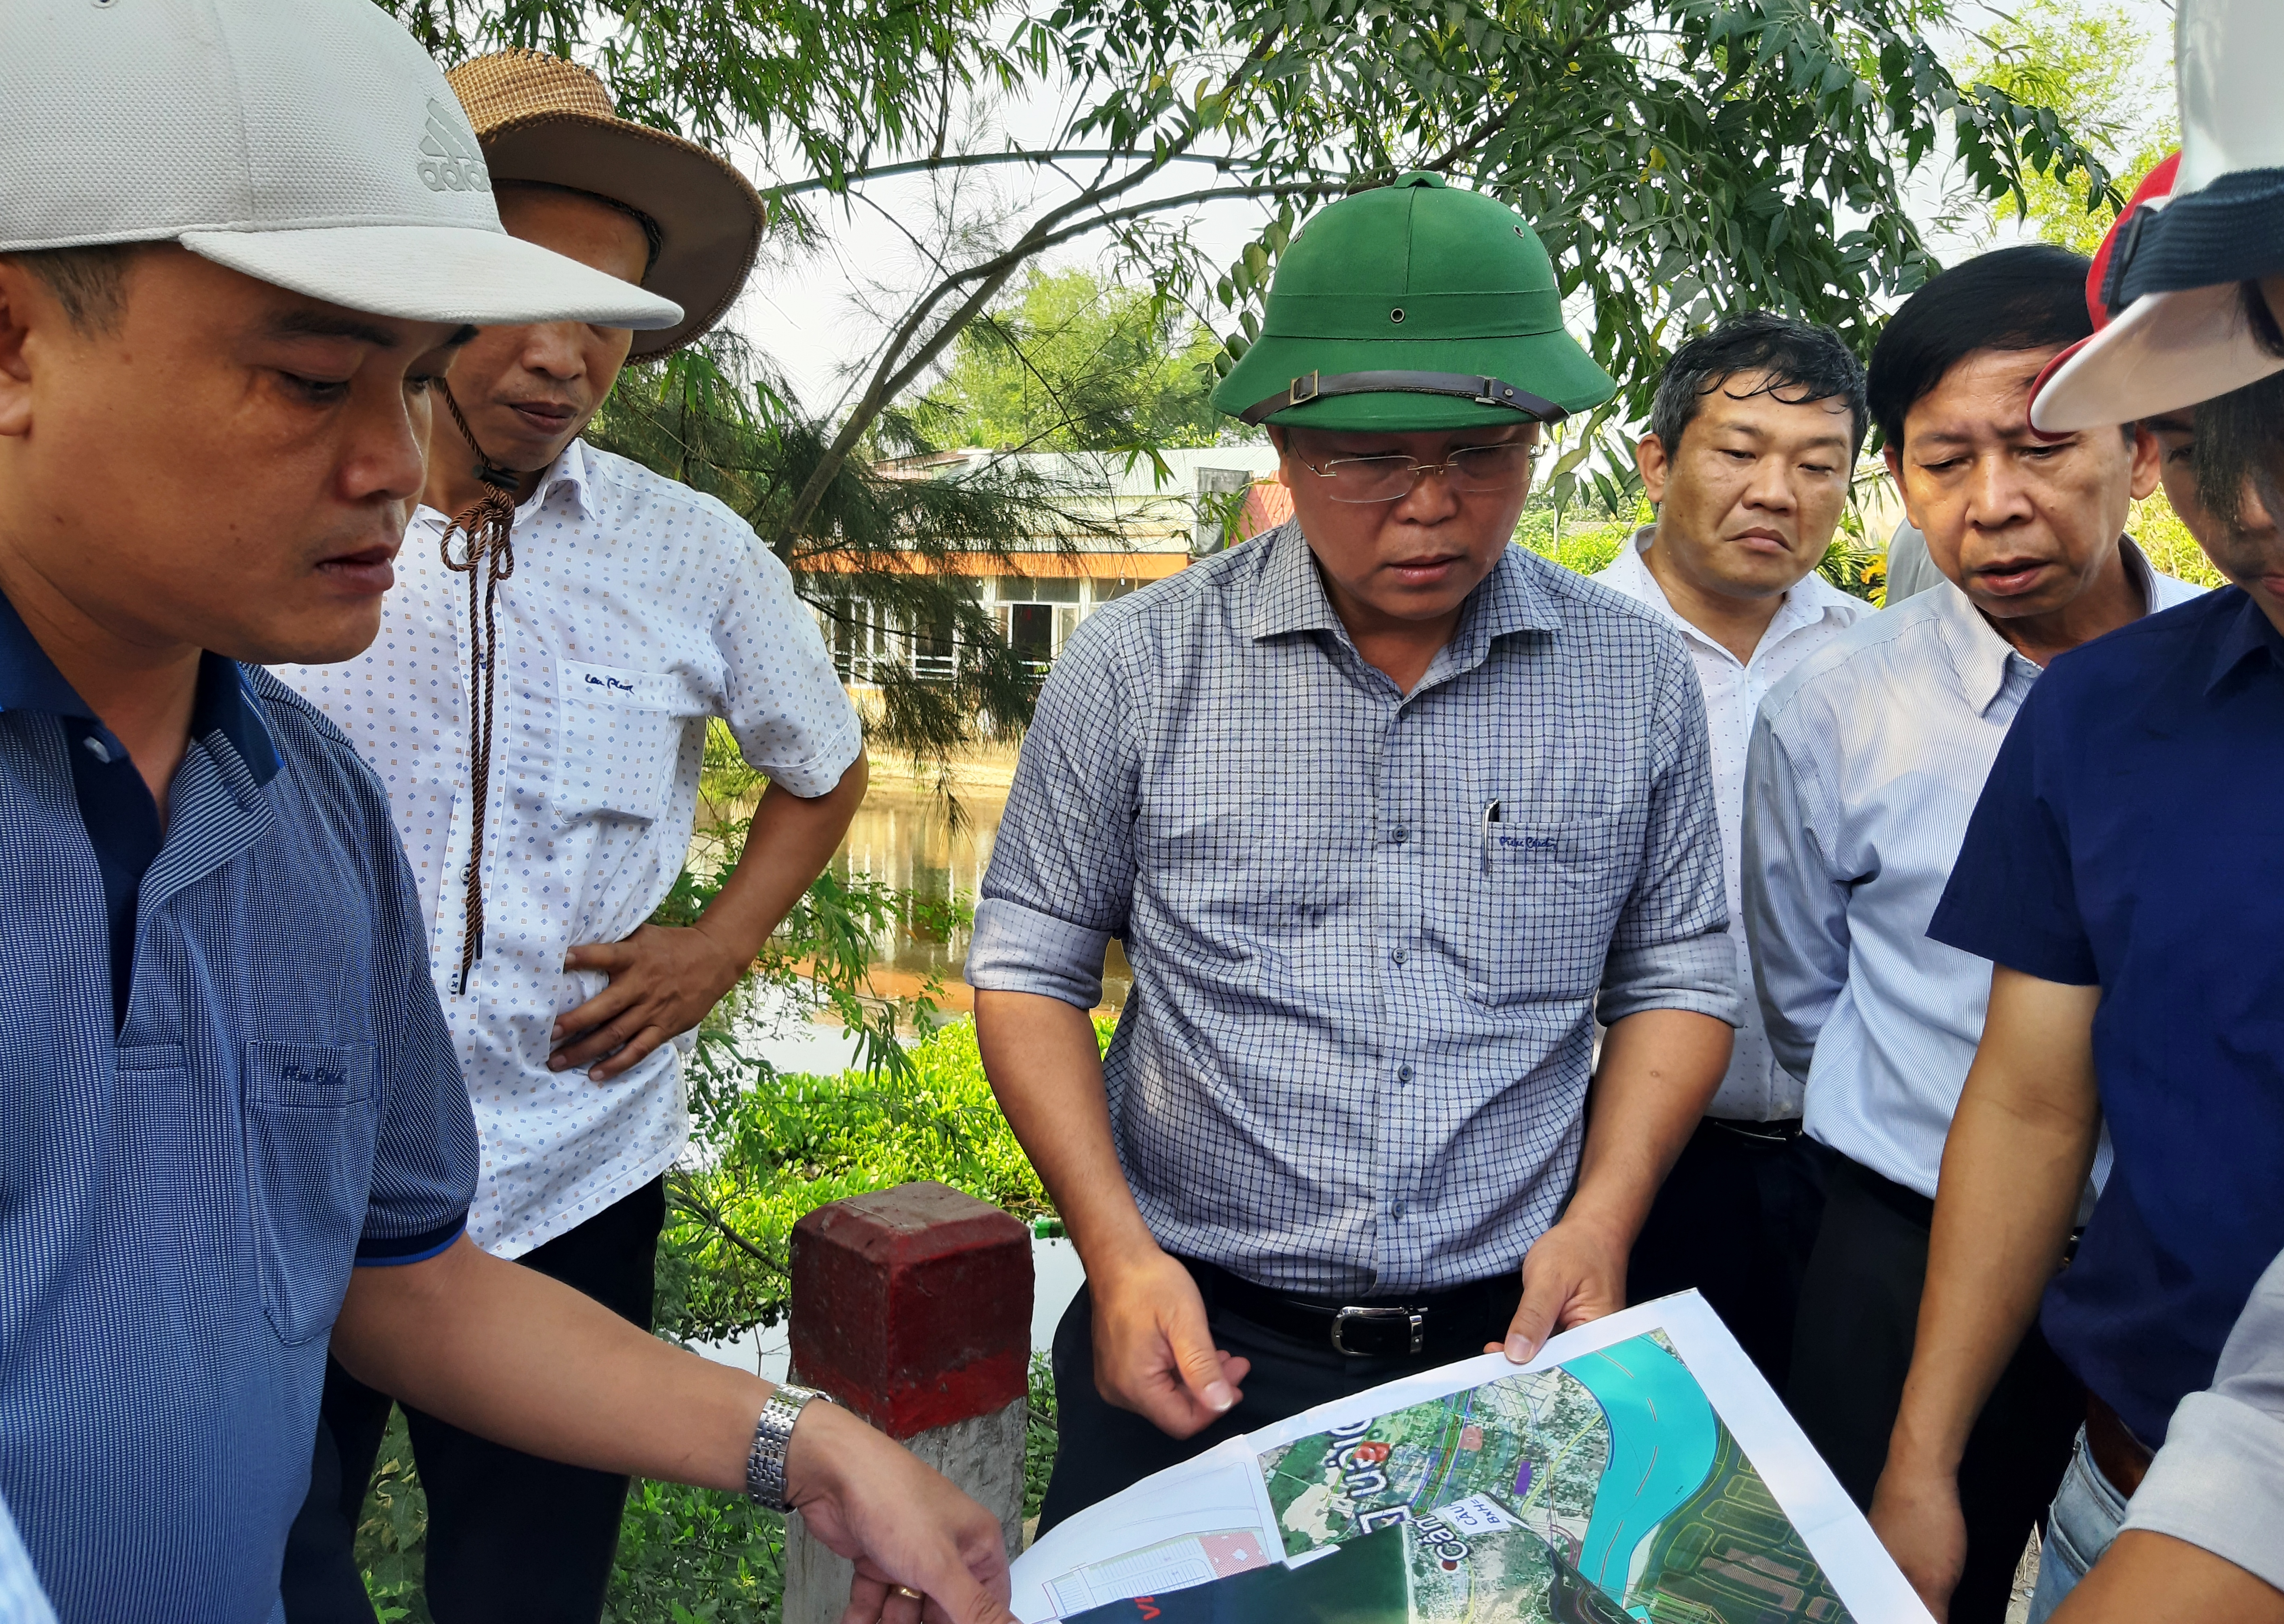 Quảng Nam quy hoạch tramway dọc sông Cổ Cò để phát triển du lịch, dịch vụ